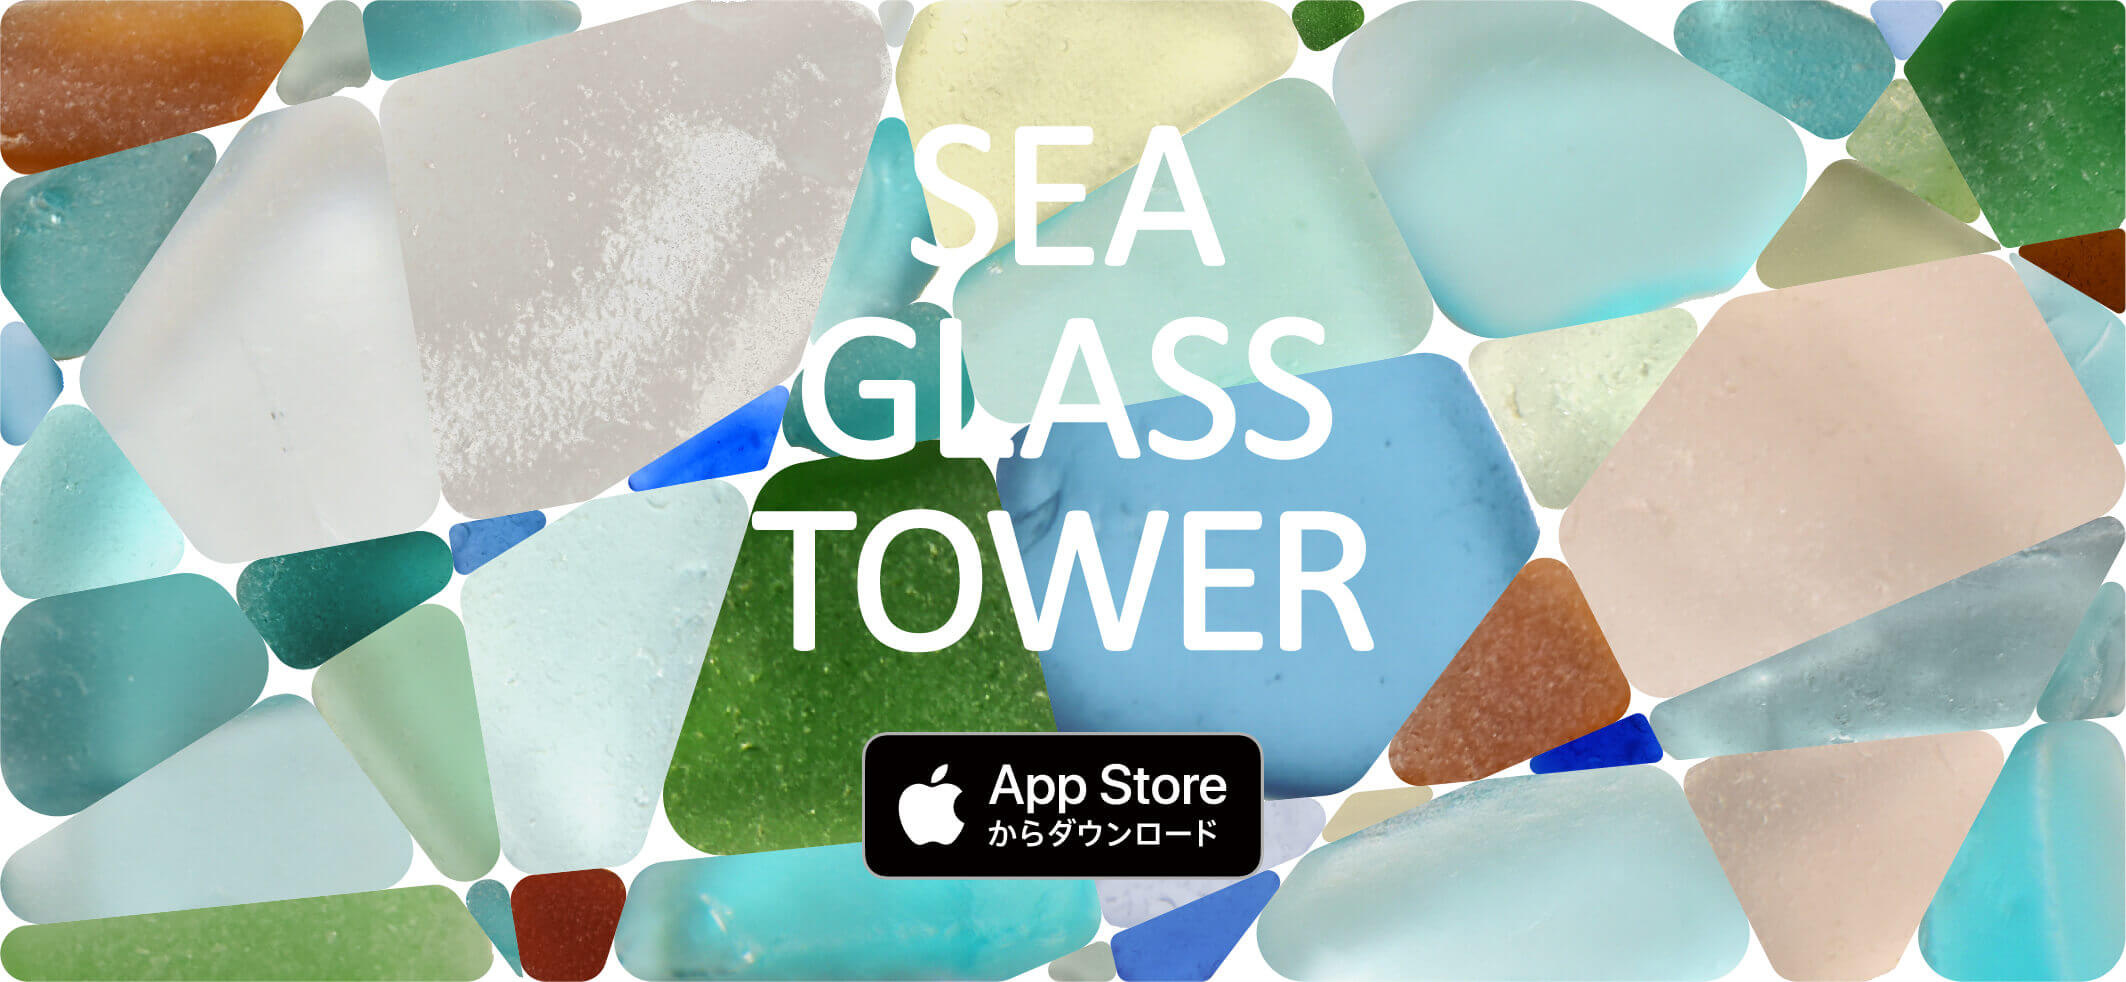 SEA GLASS TOWER(シーグラスタワー)のキービジュアル画像